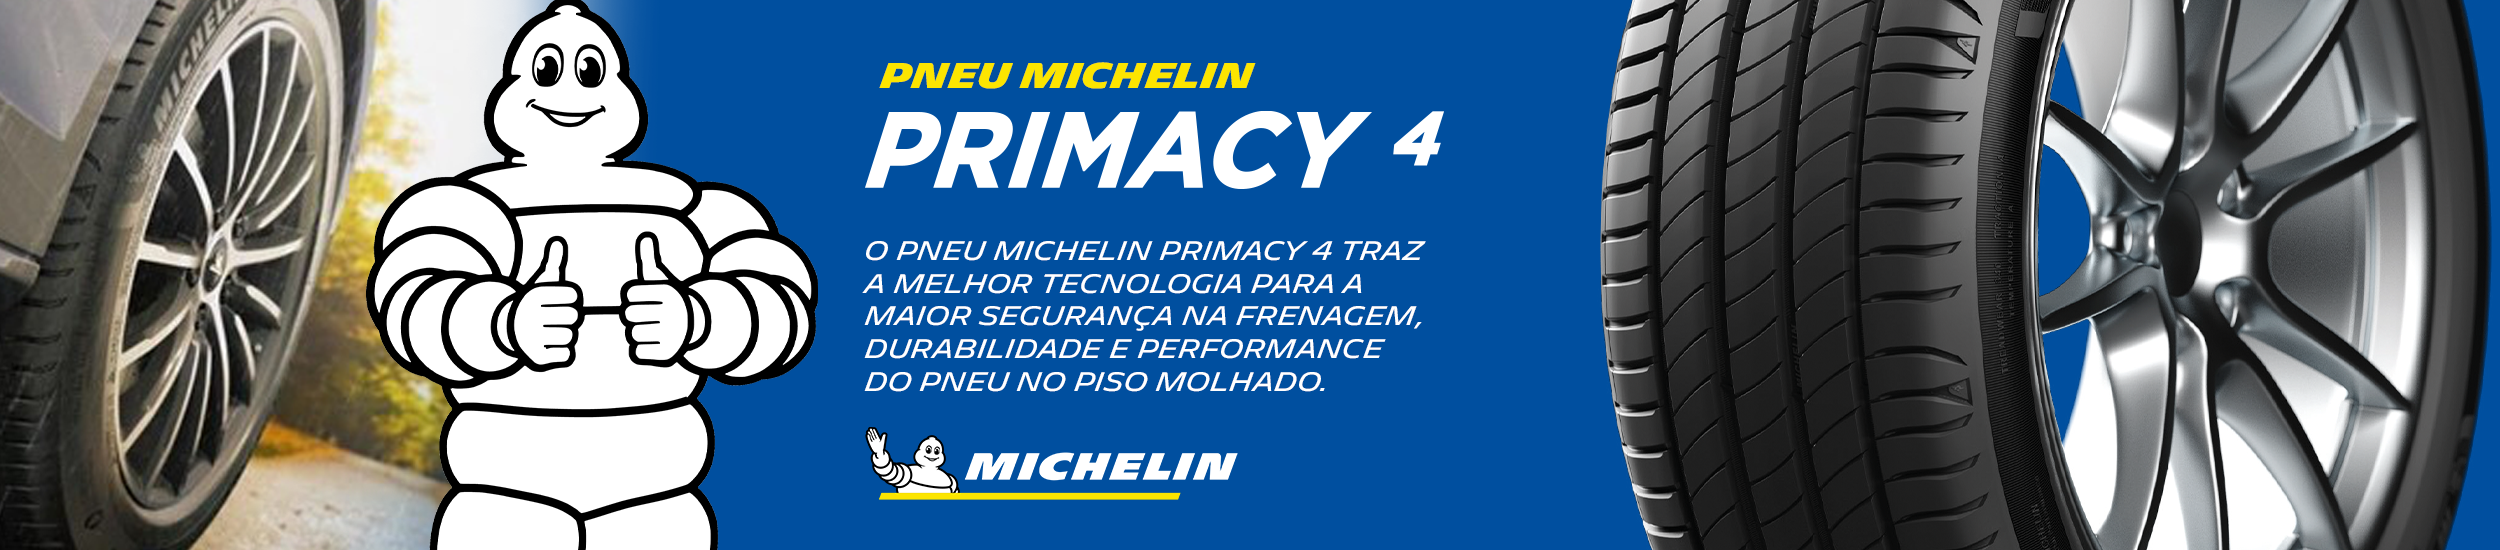 Pneu Michellin Primacy 4